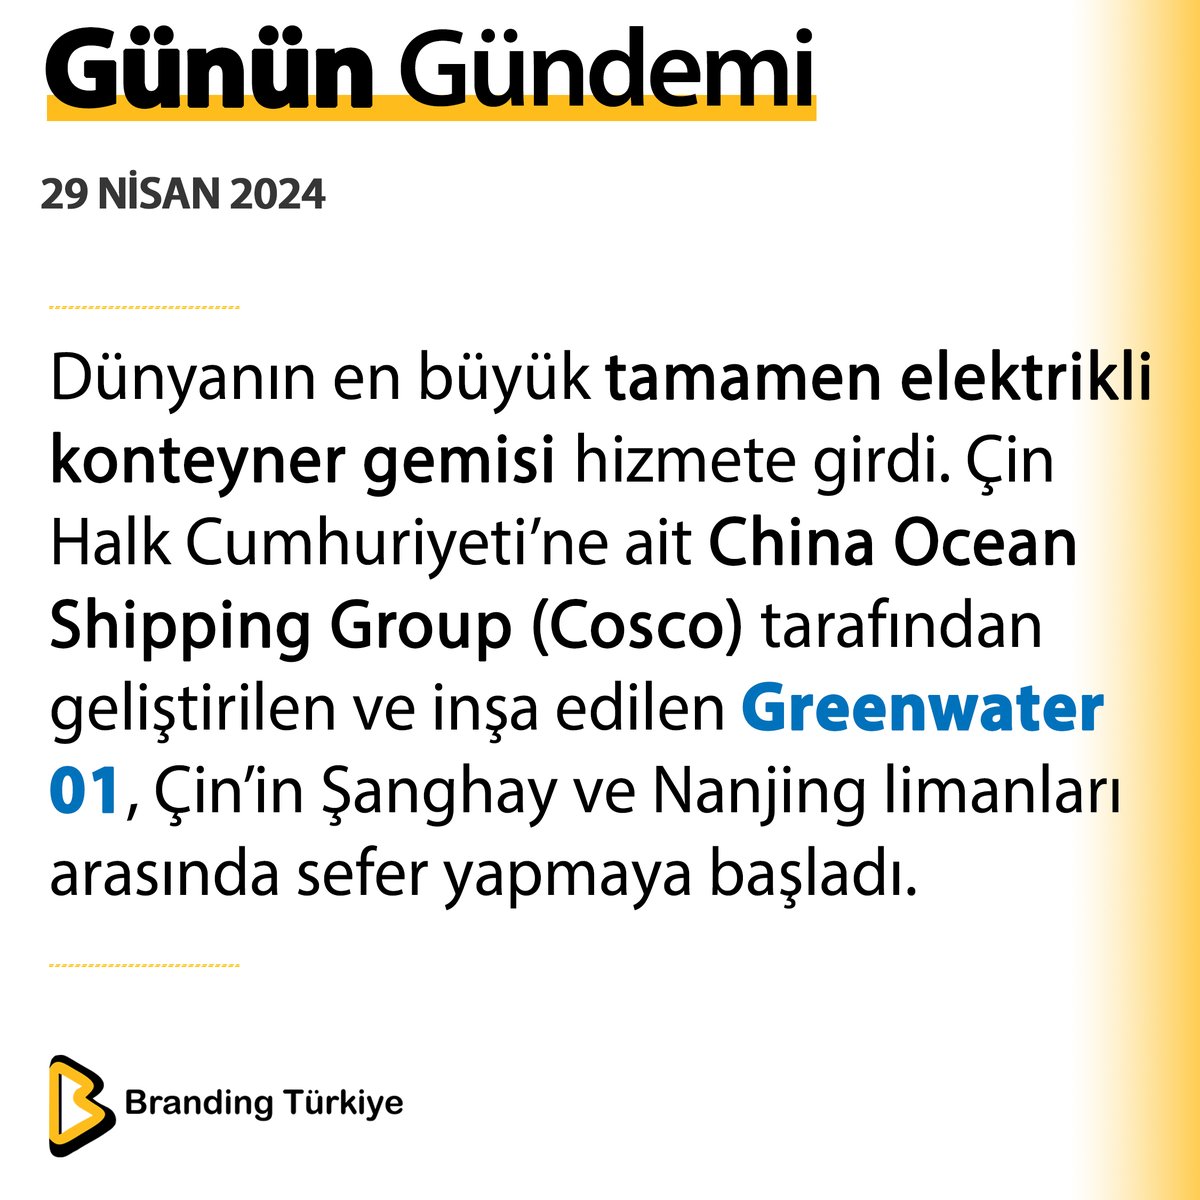 #29Nisan2024 Dünyanın en büyük tamamen elektrikli konteyner gemisi hizmete girdi. ▶ brandingturkiye.com #BrandingTürkiye #Haberler #Çin #ElektrikliGemi #Cosco #Greenwater01 #Şanghay #Denizcilik #Taşımacılık #Lojistik #Sürdürülebilirlik #SonDakika